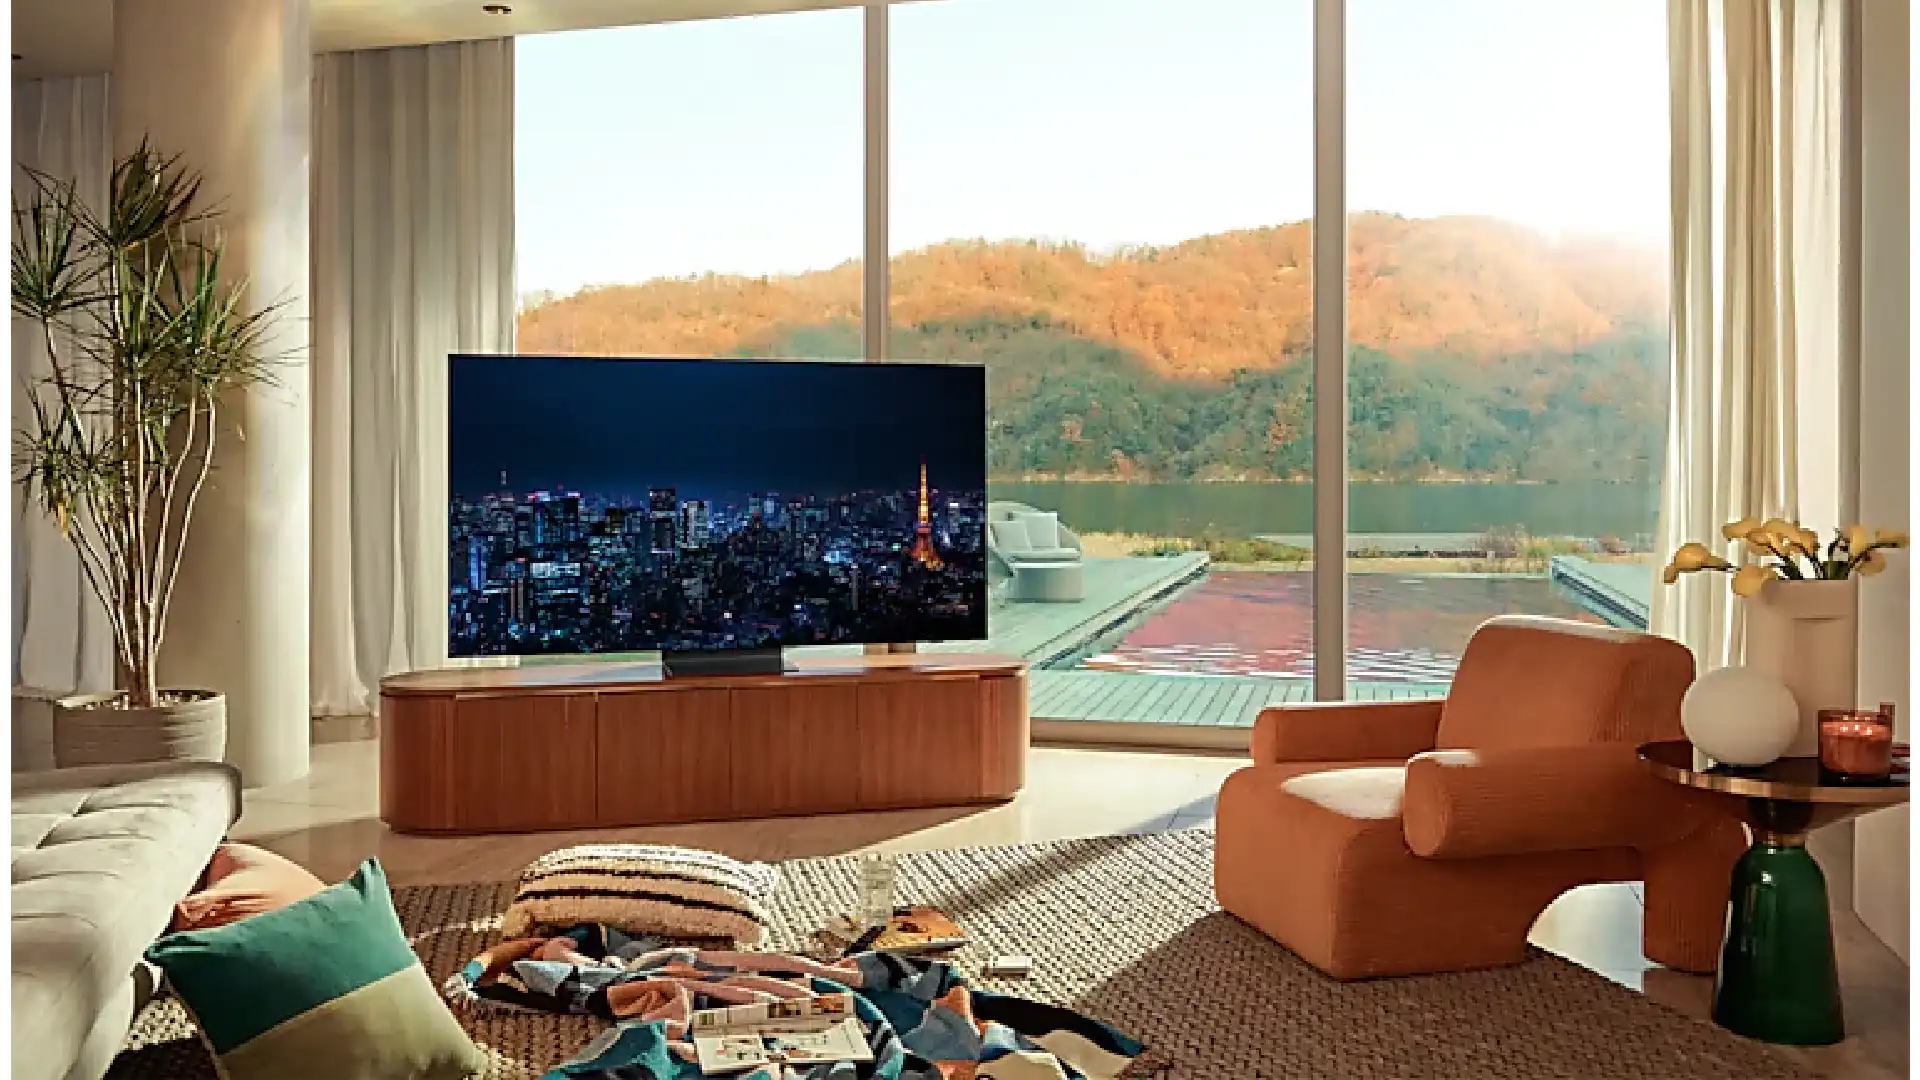 Imagem da TV Samsung QN90A sobre rack de madeira em uma sala de estar espaçosa e elegante